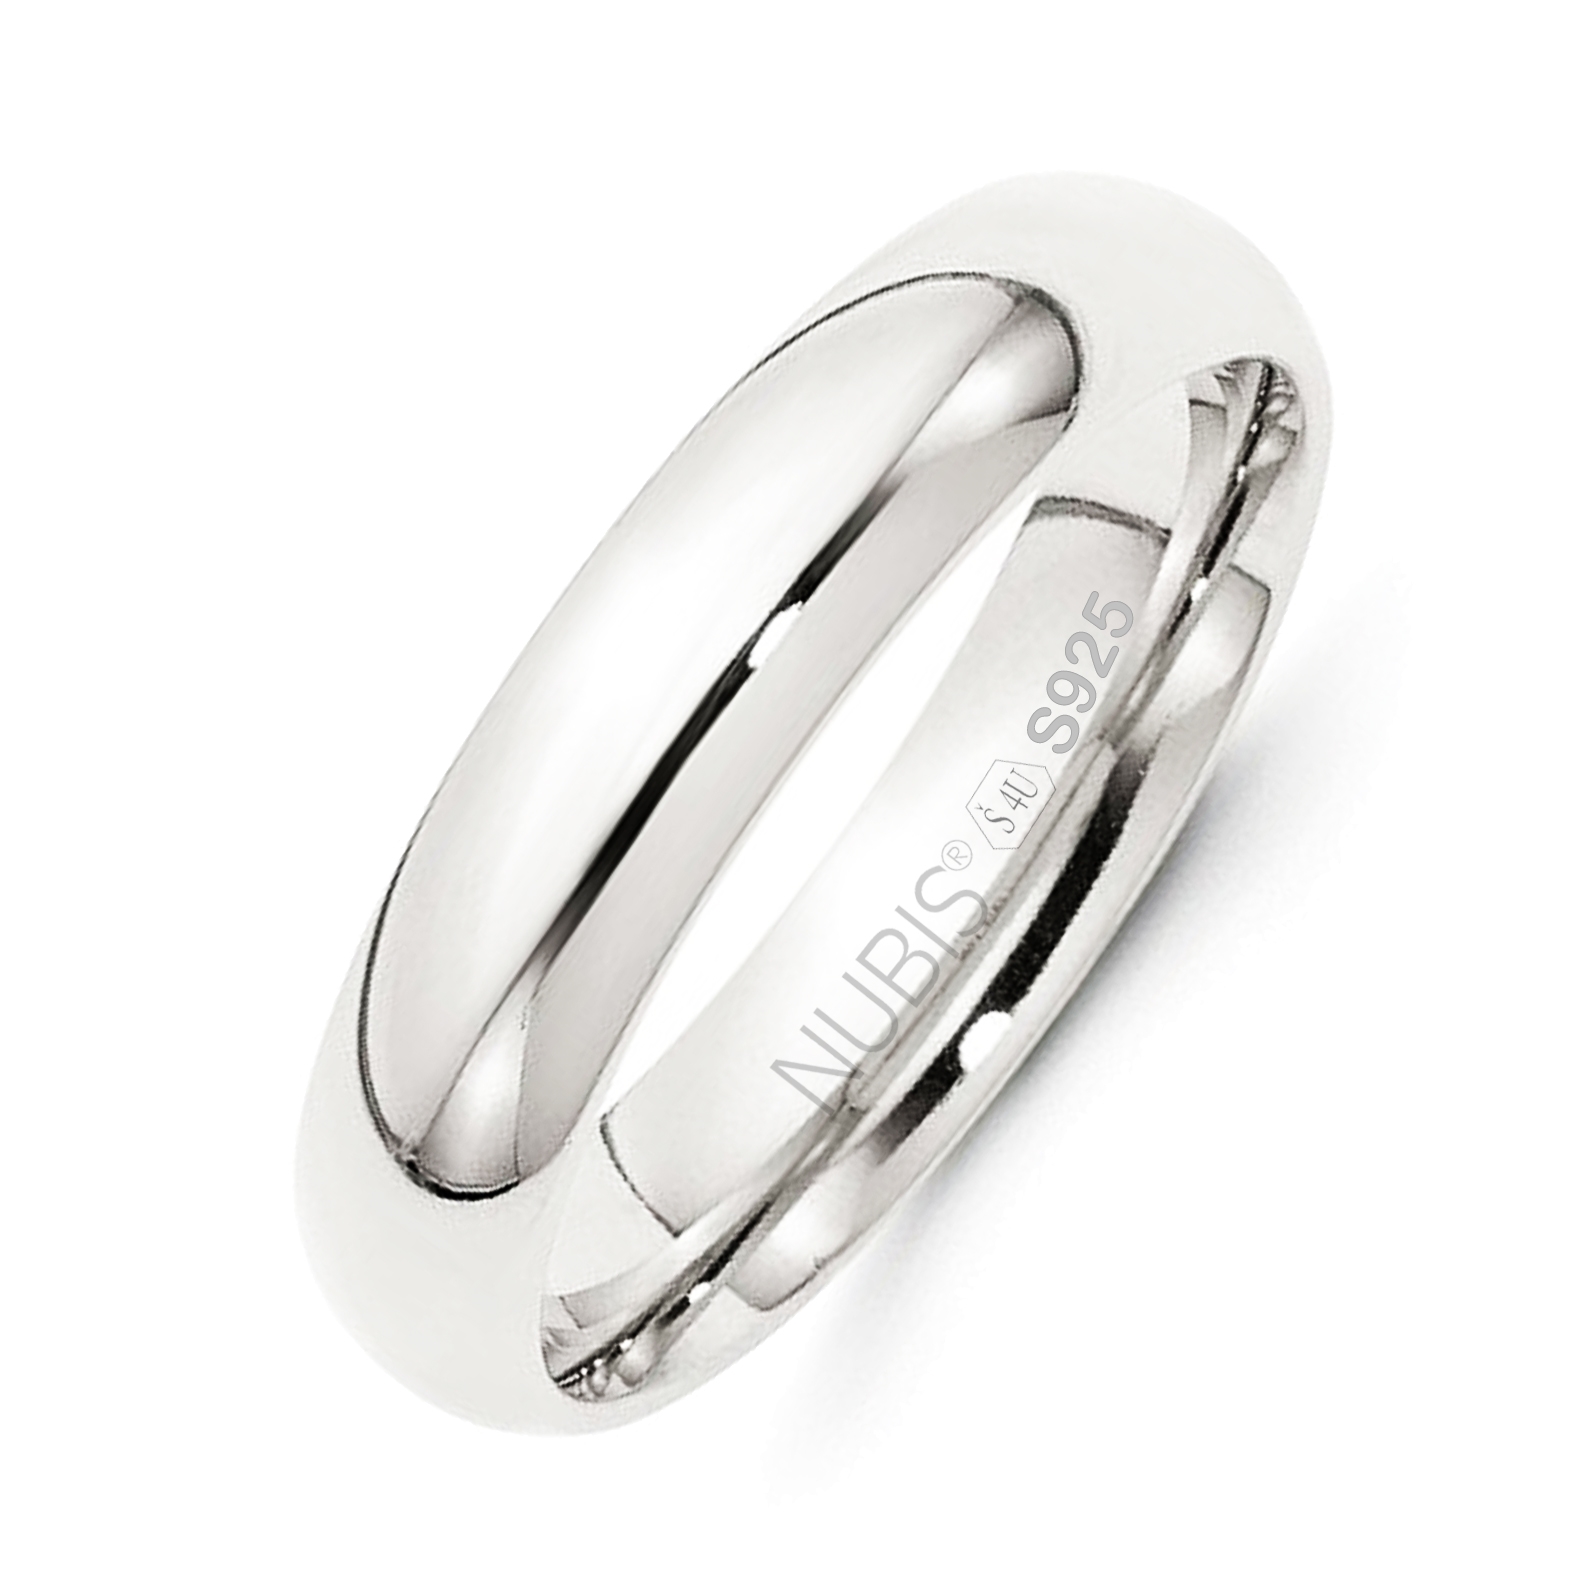 NUBIS® NB101-5 Stříbrný snubní prsten šíře 5 mm - velikost 52 - NB101-5-52